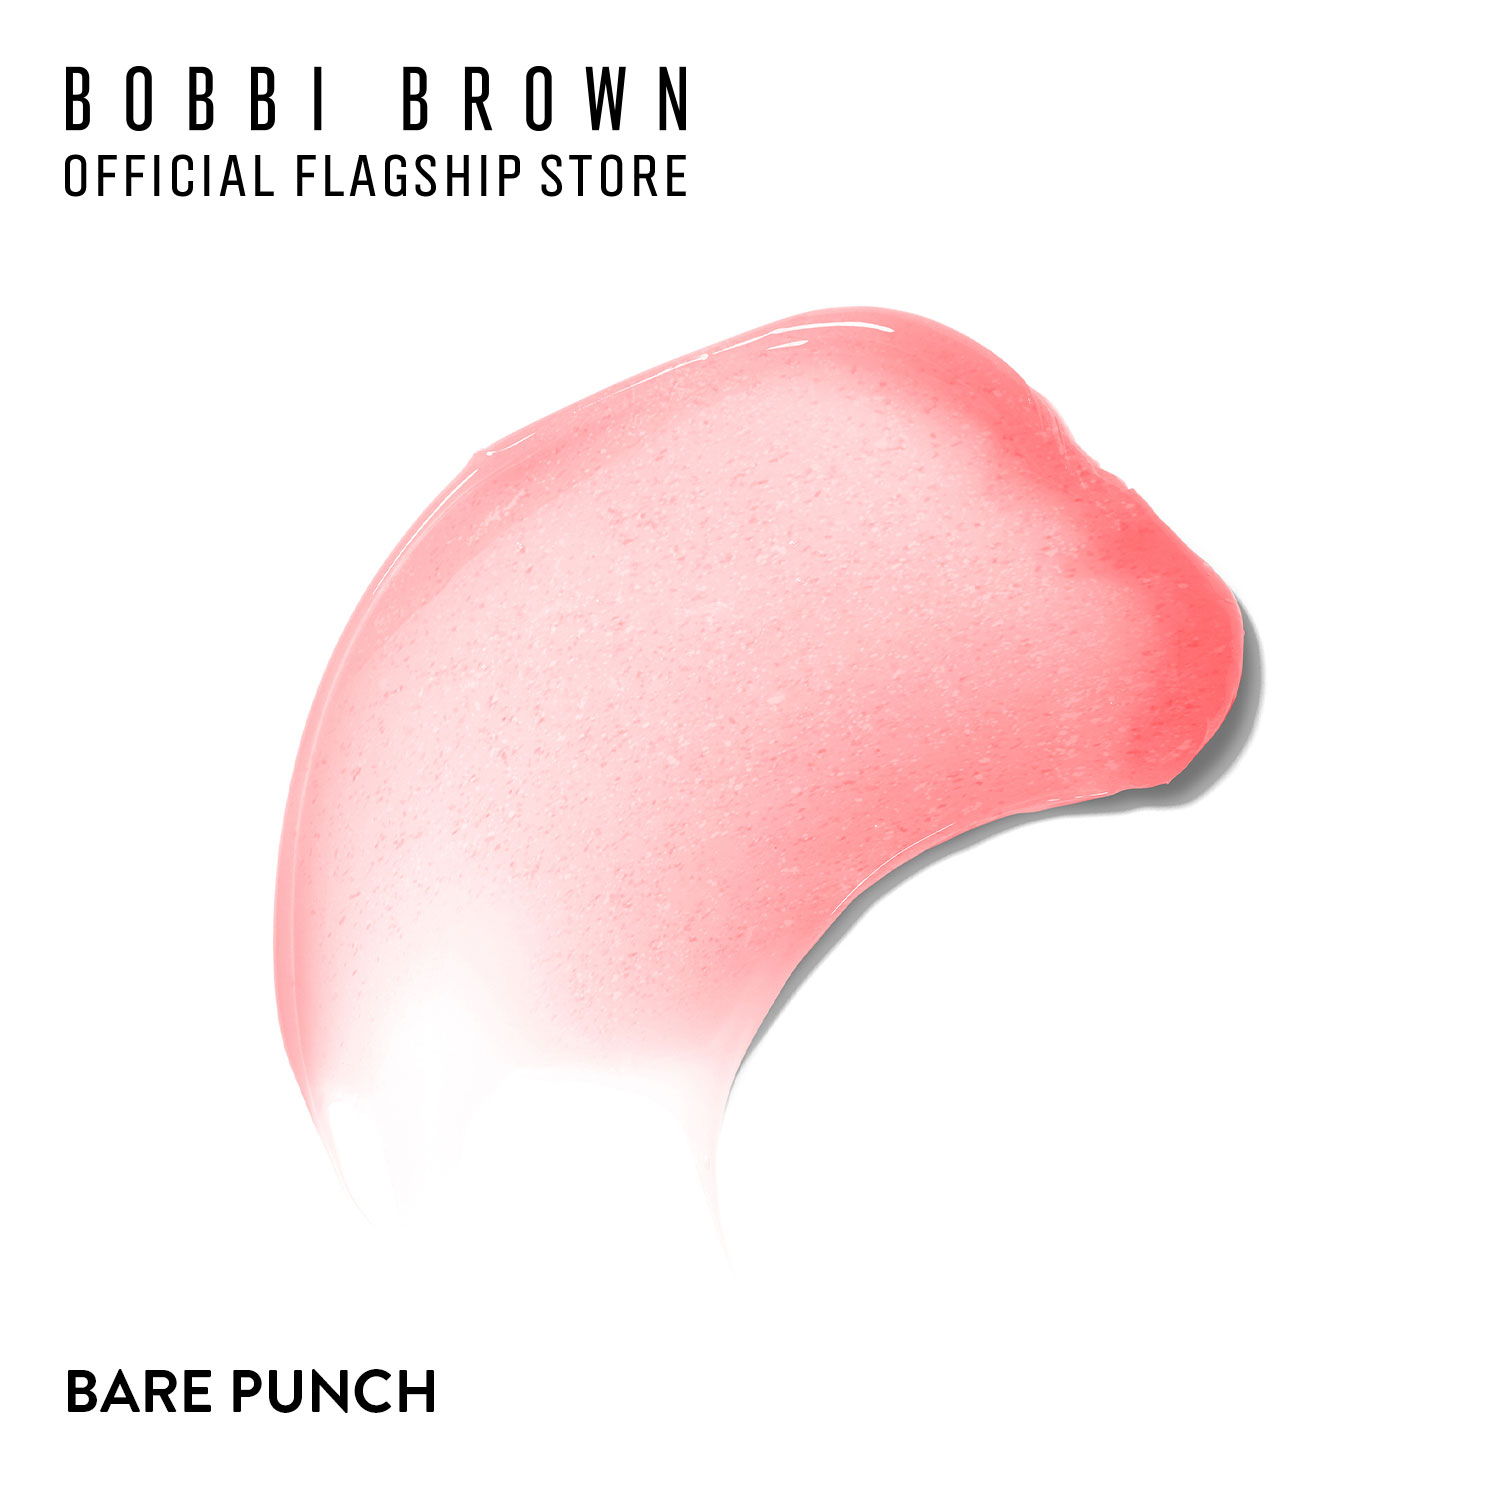 บ็อบบี้ บราวน์ ลิปสติก Bobbi Brown Extra Lip Tint 2.3g  ชื่อสี BARE BLACKBERRY